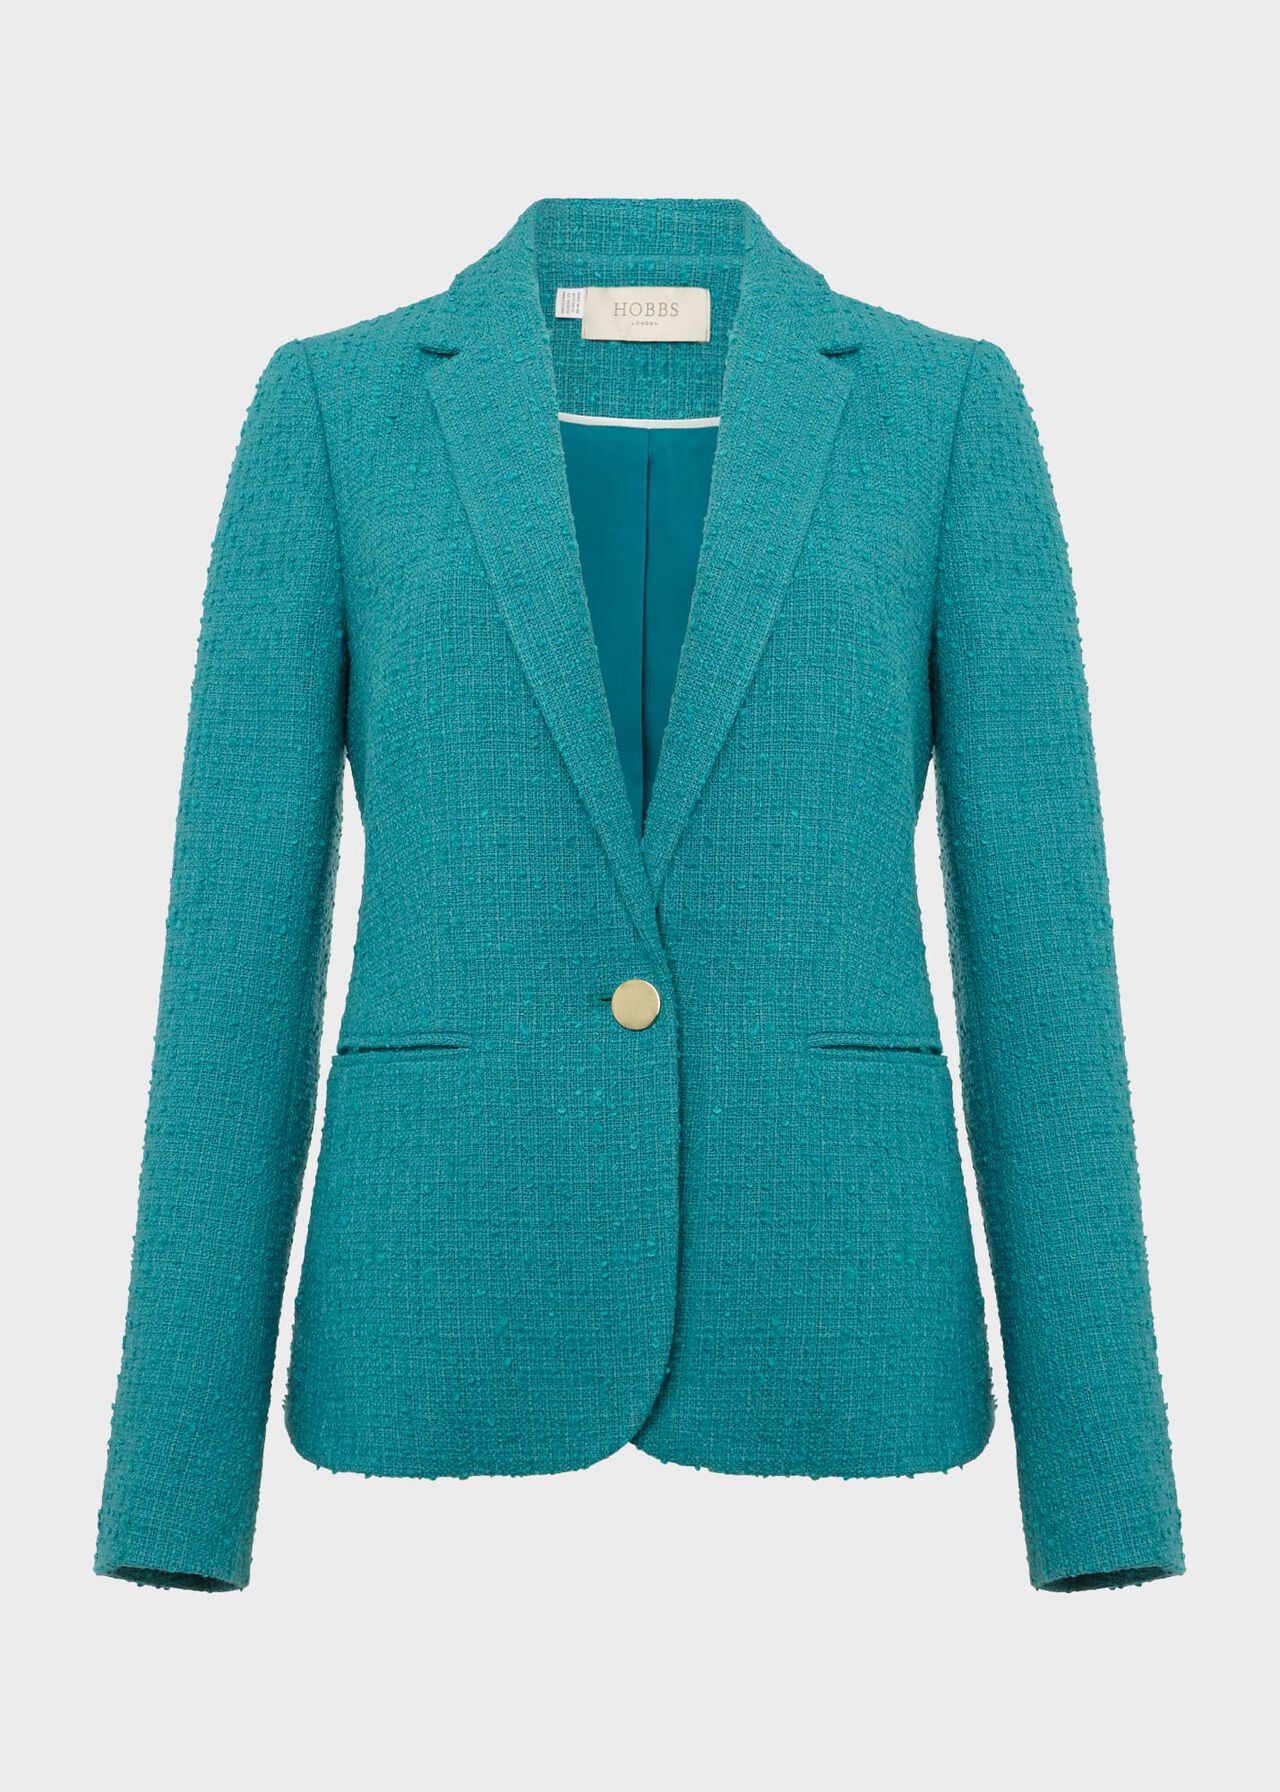 Amara Textured Jacket, Ocean Green, hi-res